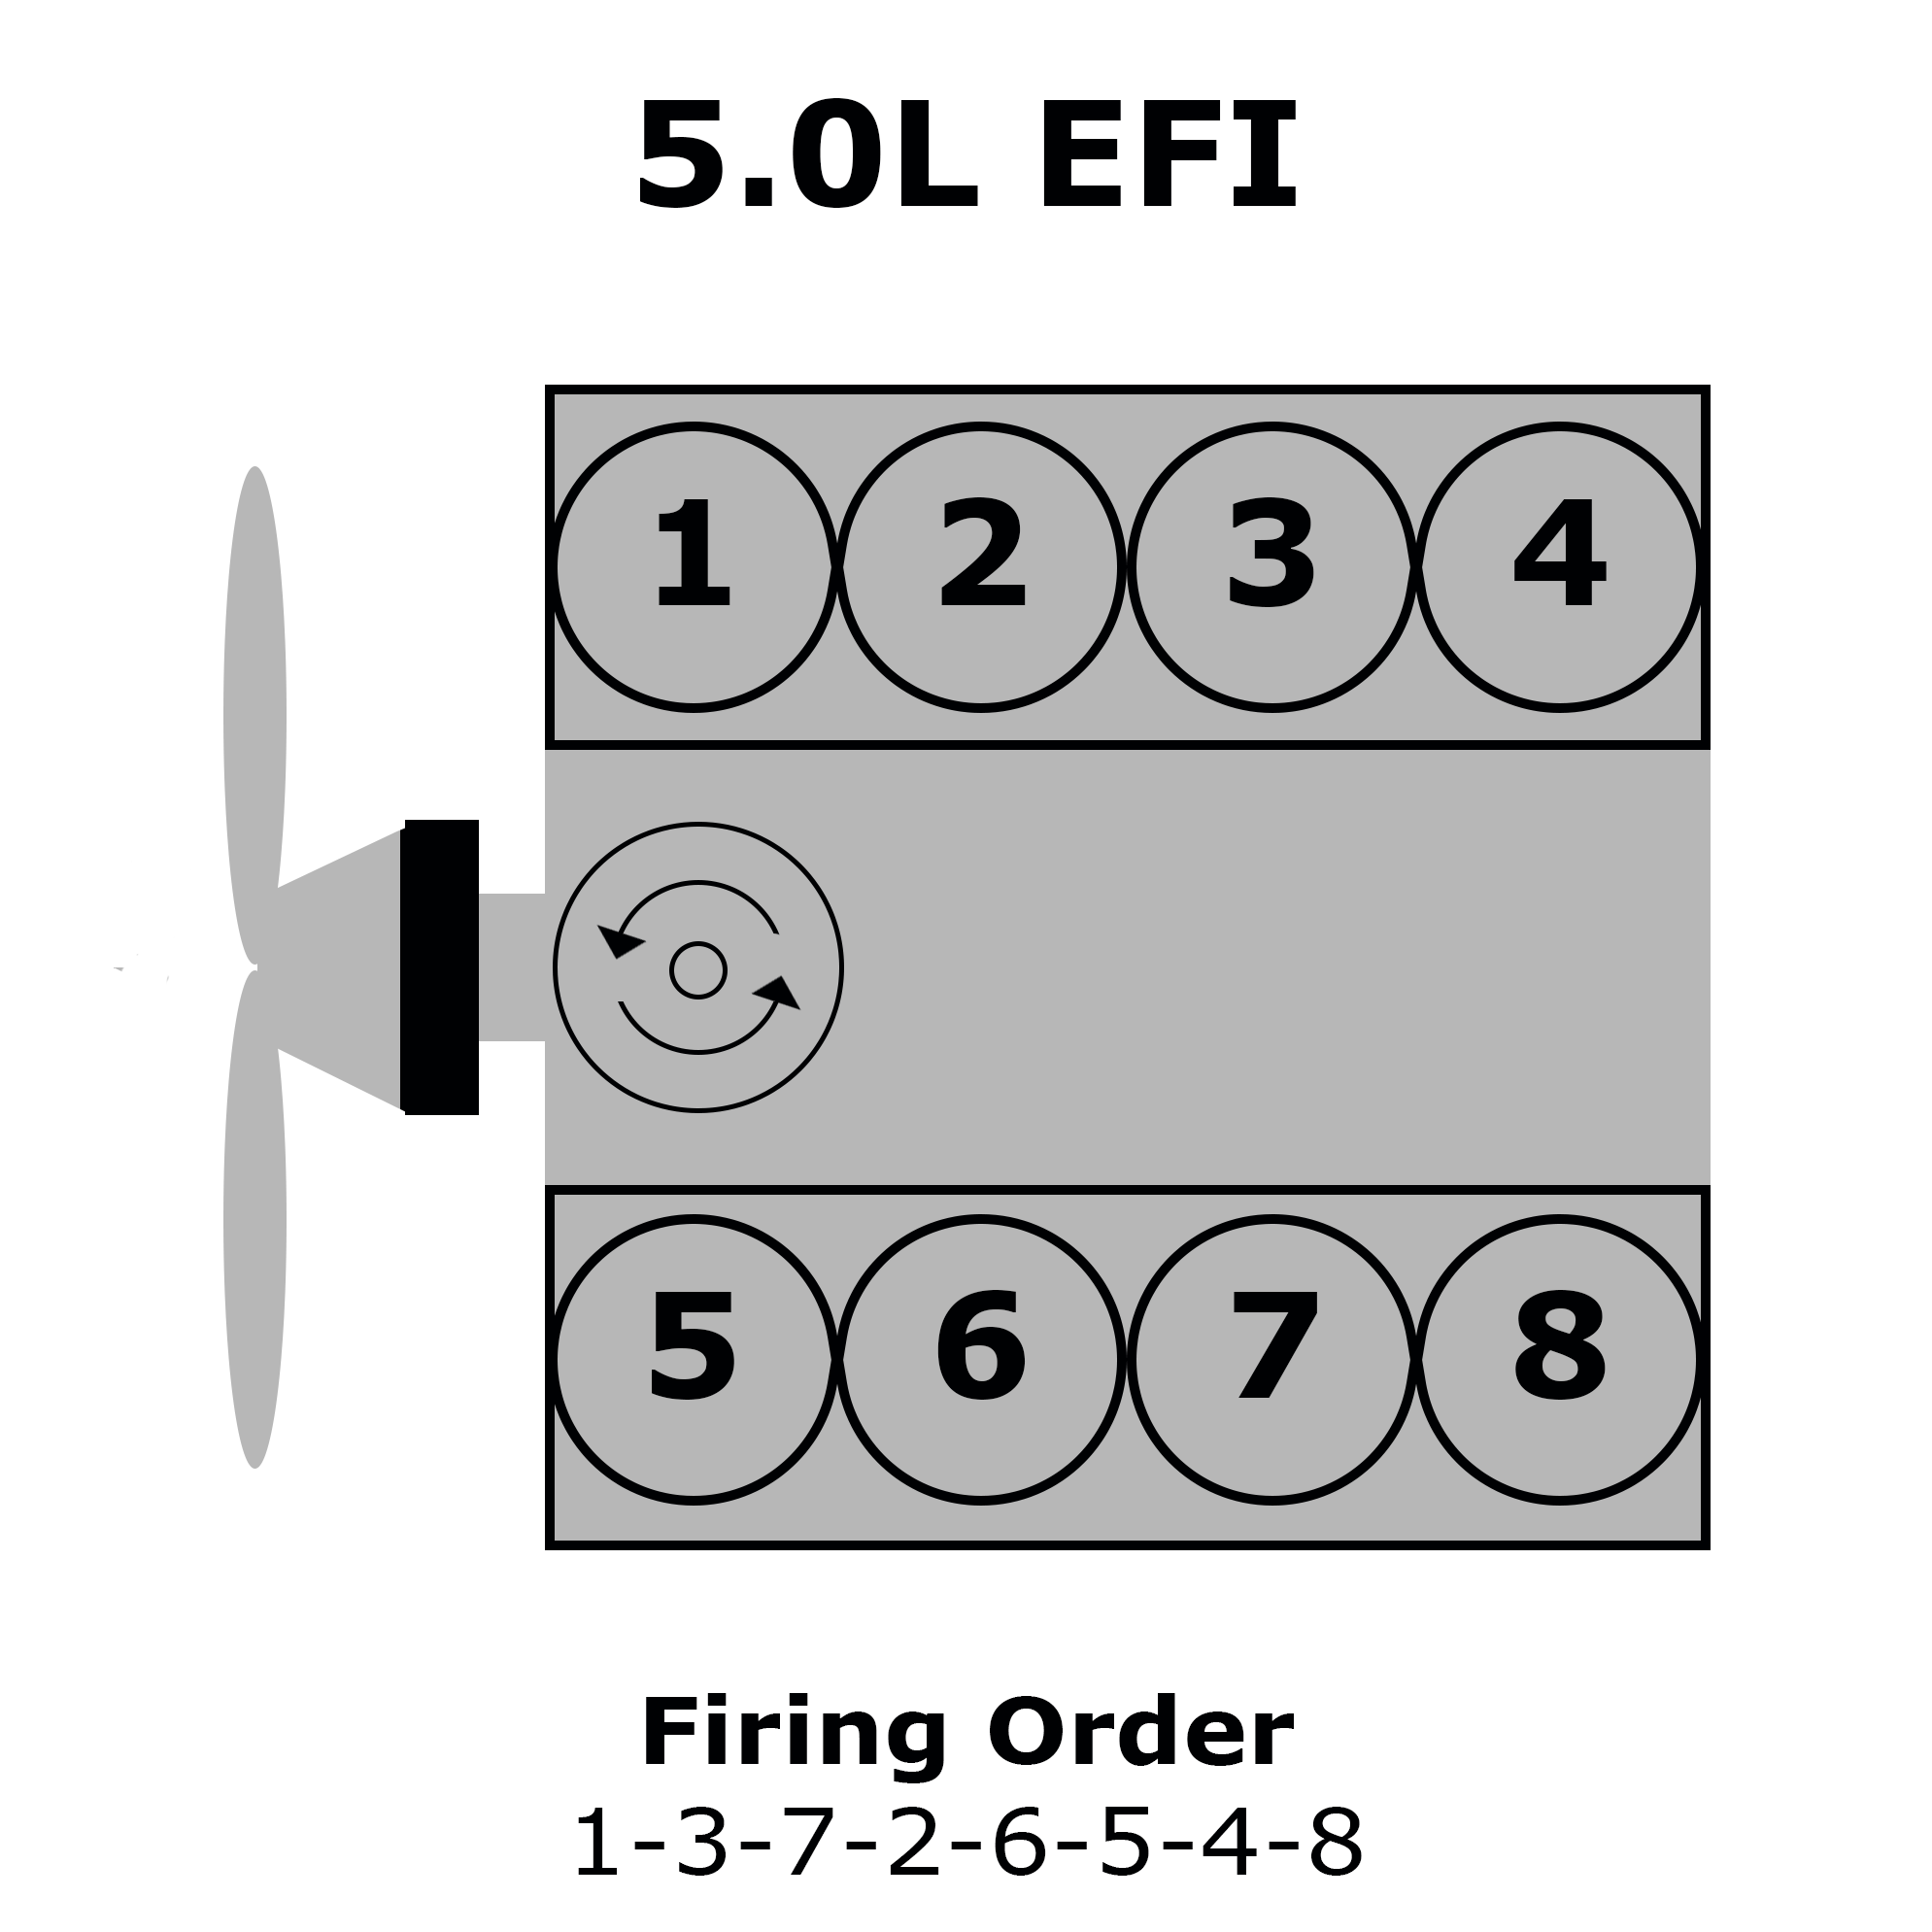 Ford Firing Order 5.0